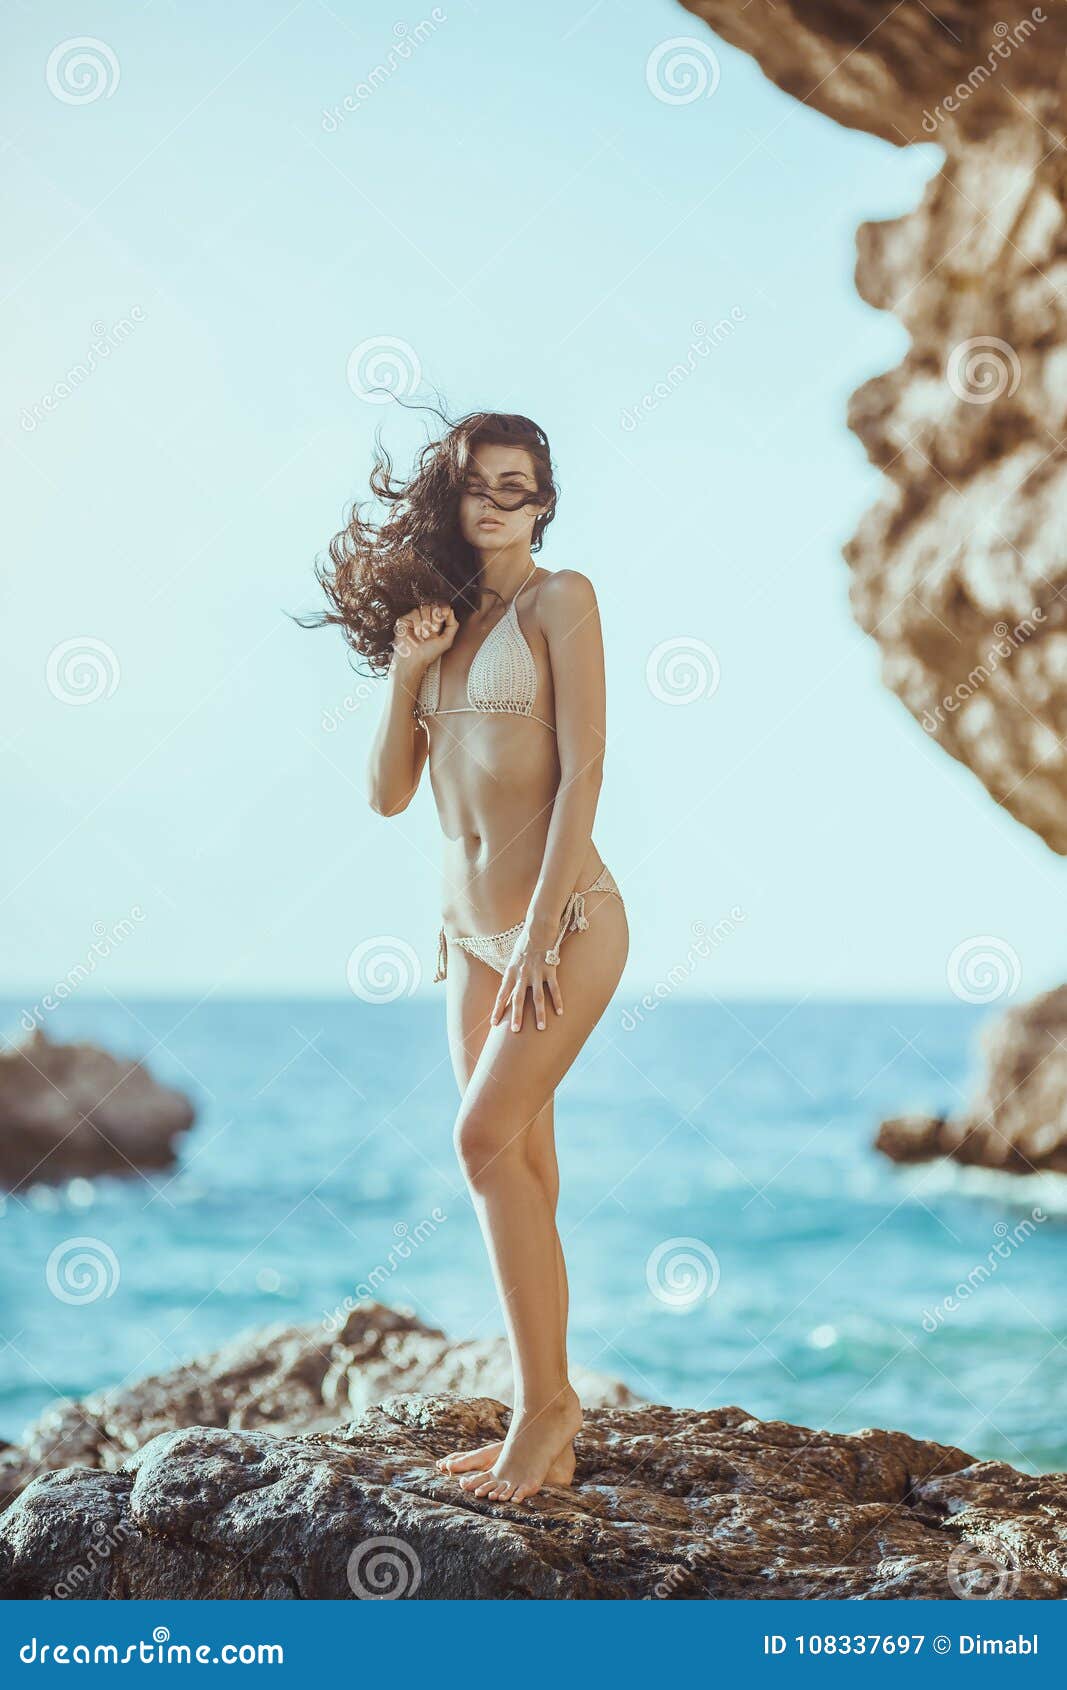 amateur hd beach nude